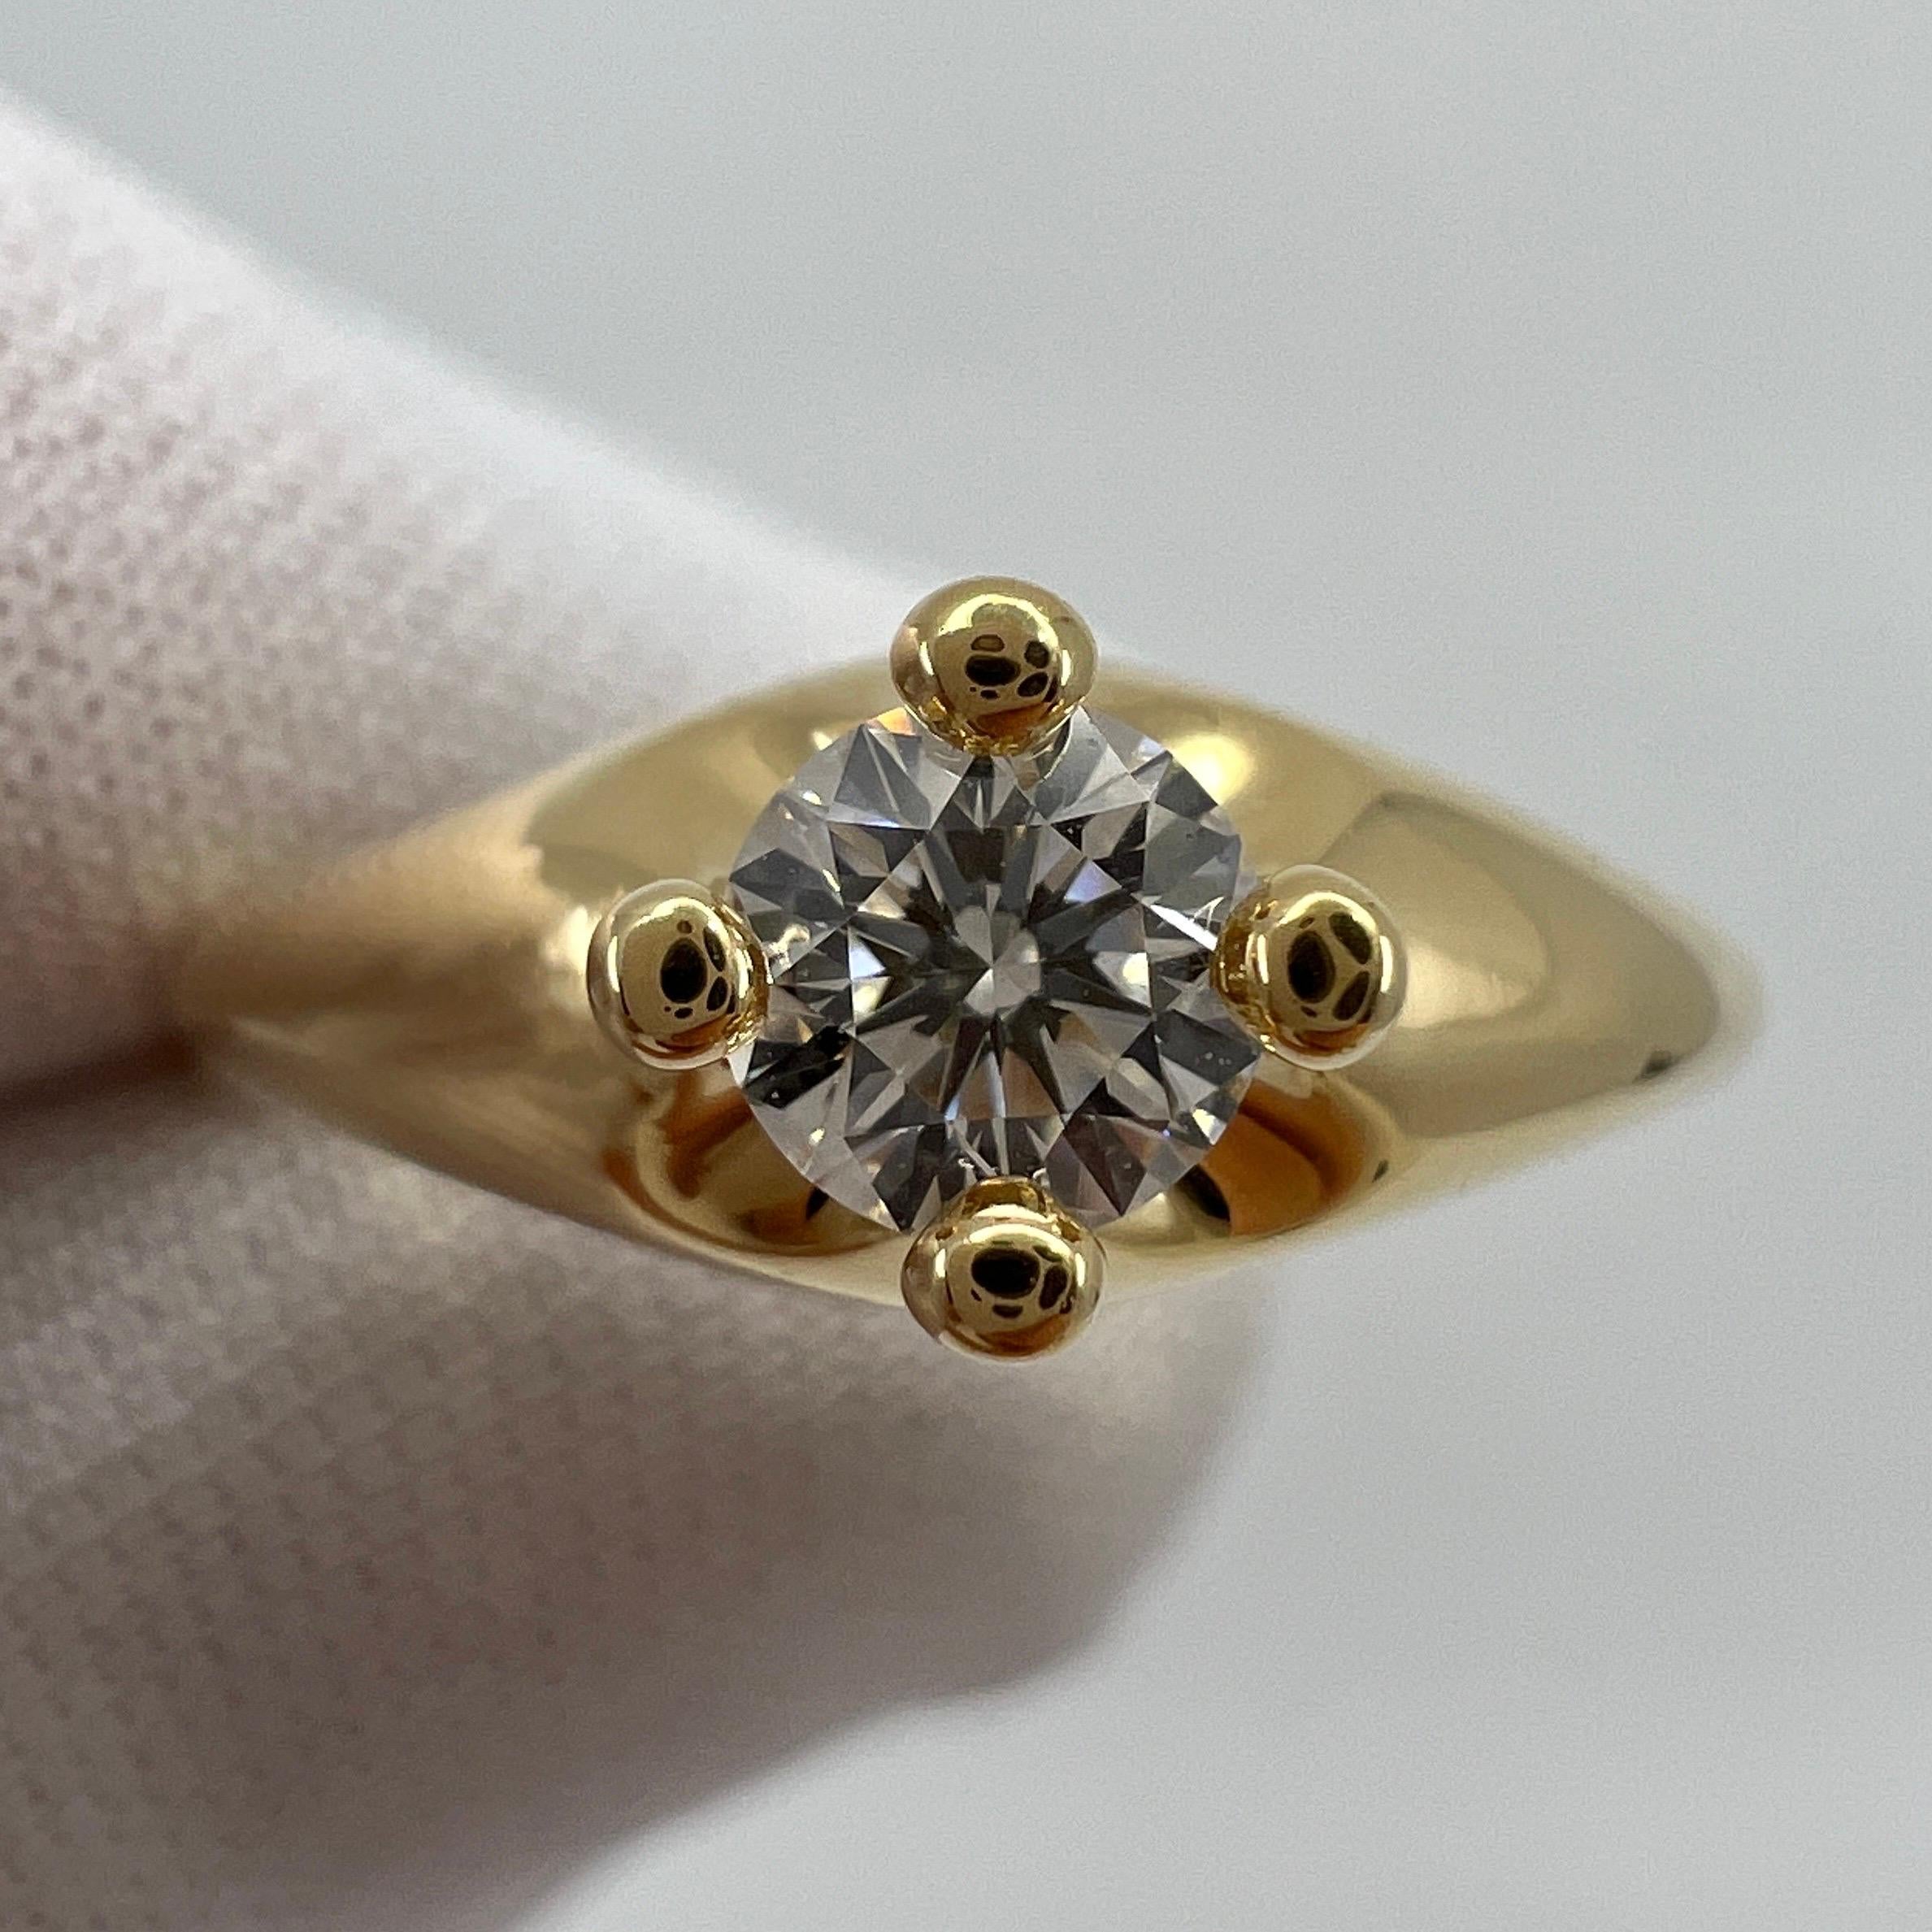 Bvlgari 18k Gelbgold Diamond Round Cut Solitaire Band Ring.

Ein klassischer Solitär-Diamantring von Bvlgari, besetzt mit einem einzelnen Diamanten von 0,27 Karat. Sie messen 4,2 mm.
Schmuckhäuser wie Bvlgari verwenden für ihren Schmuck nur die